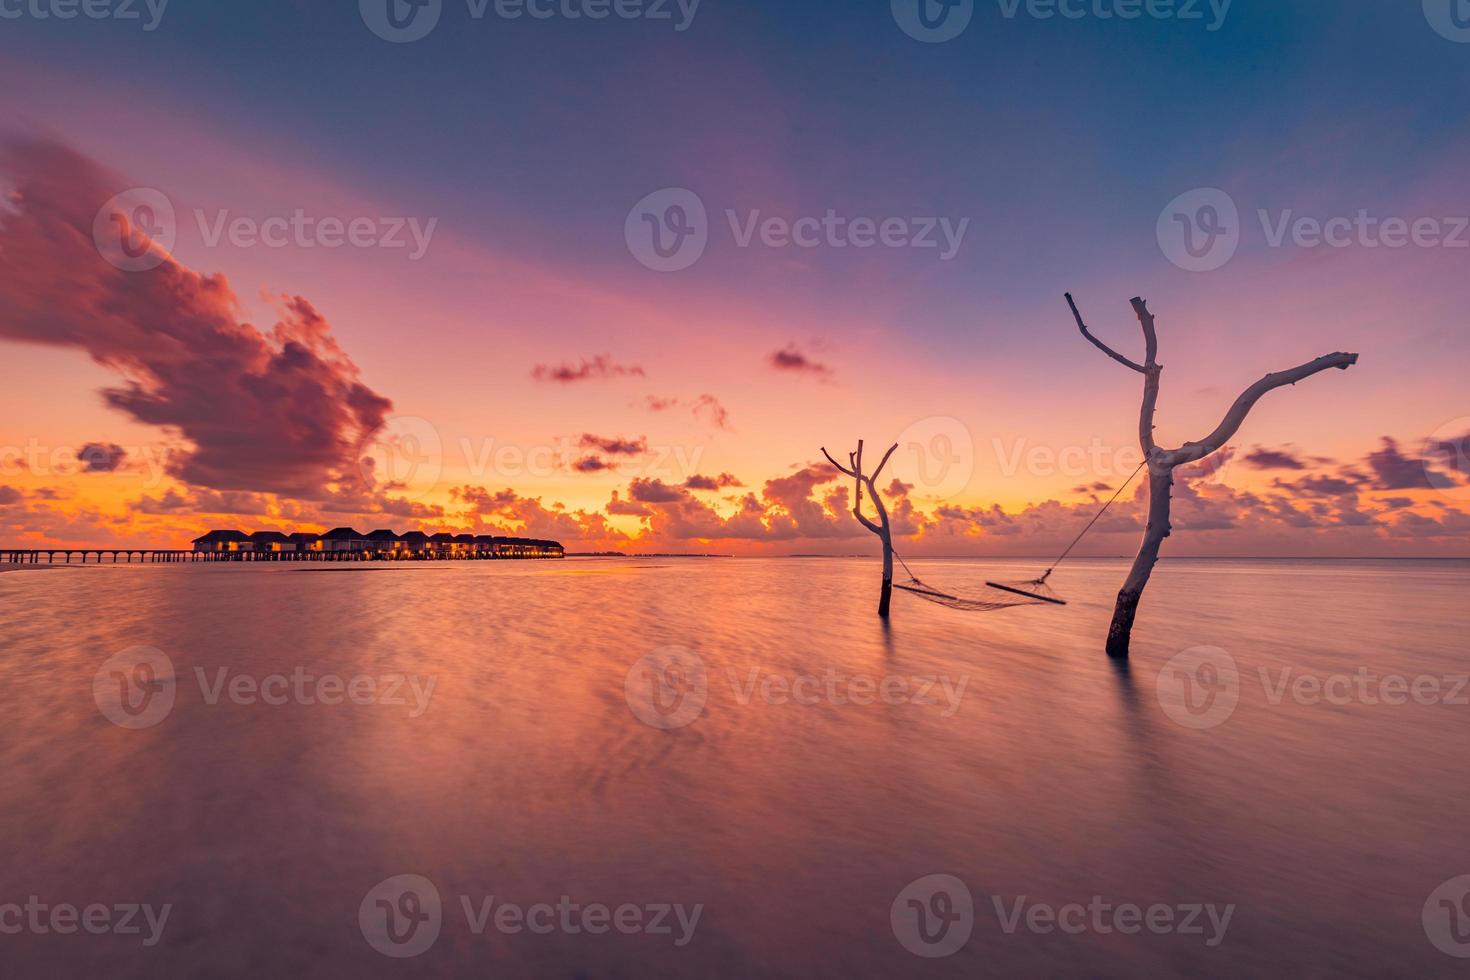 mooi helder zonsondergang Aan een tropisch paradijs strand. abstract lang blootstelling water en lucht, boom takken met schommel of hangmat. verbazingwekkend lagune, eiland oever, ontspanning, recreatie vrije tijd zorgeloos foto